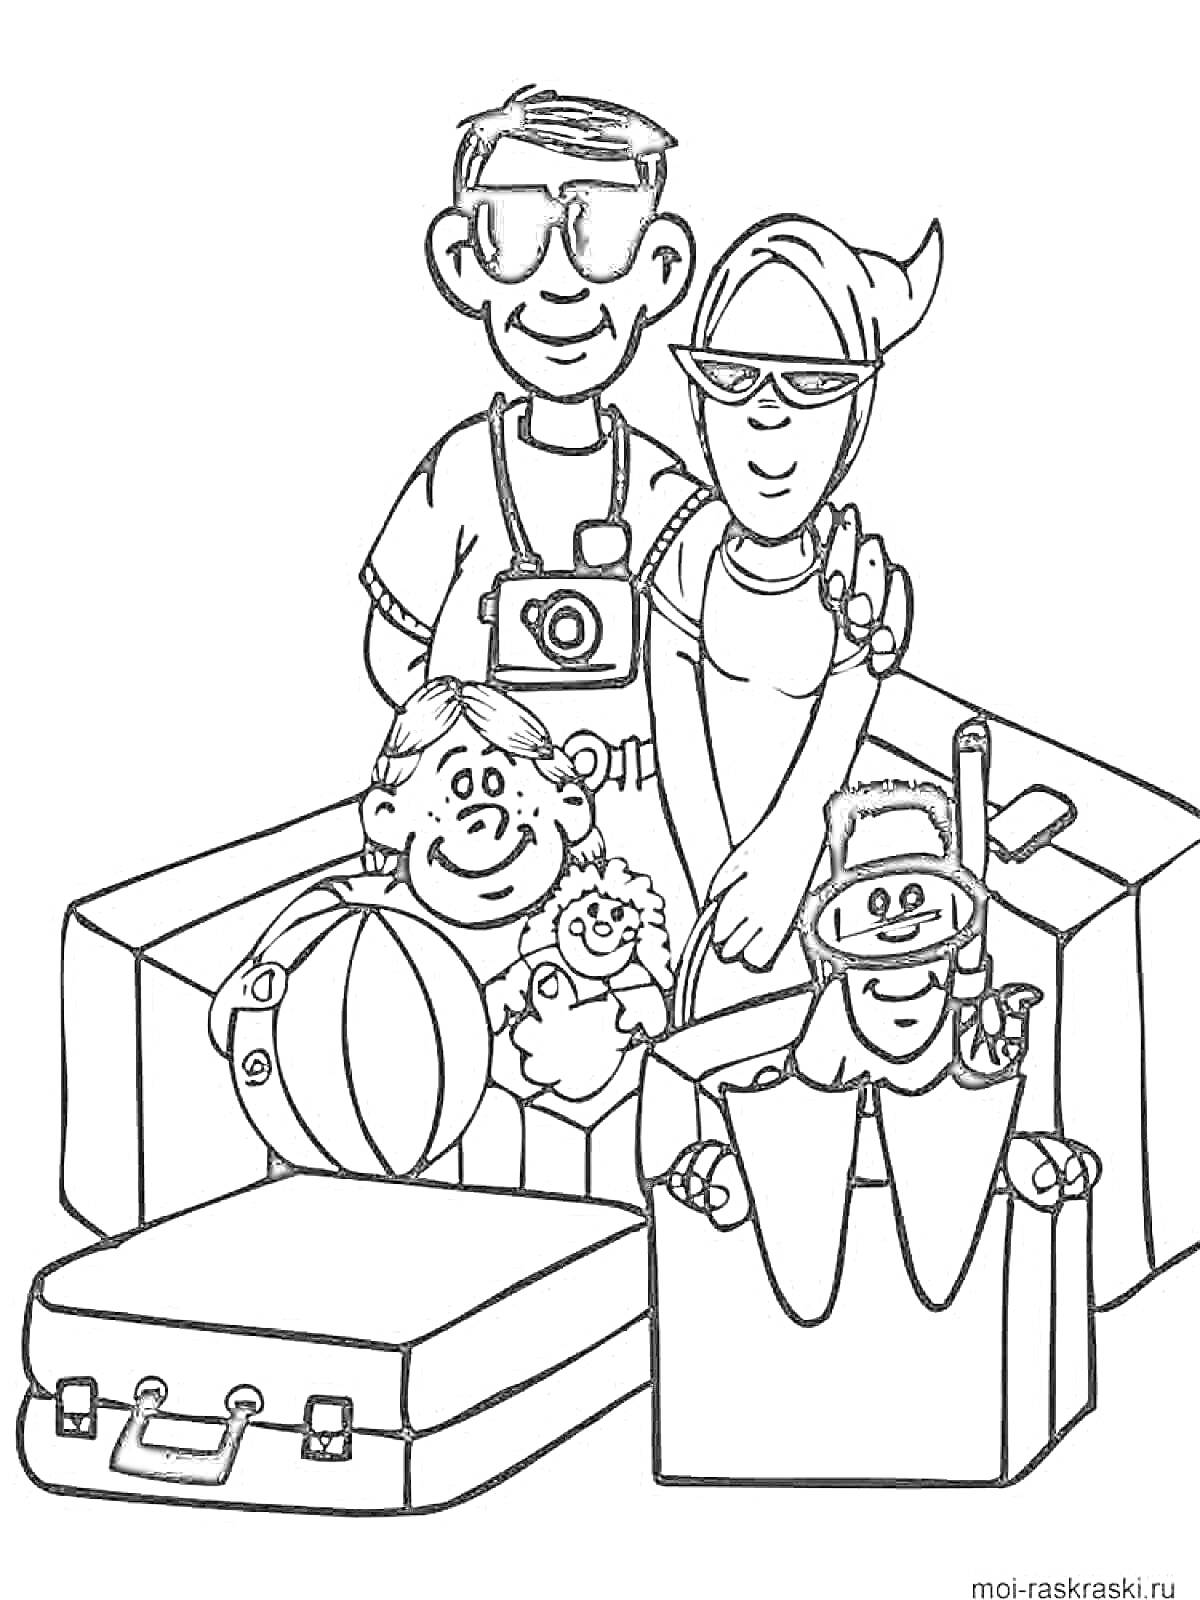 Семья на отдыхе с игрушками и чемоданом